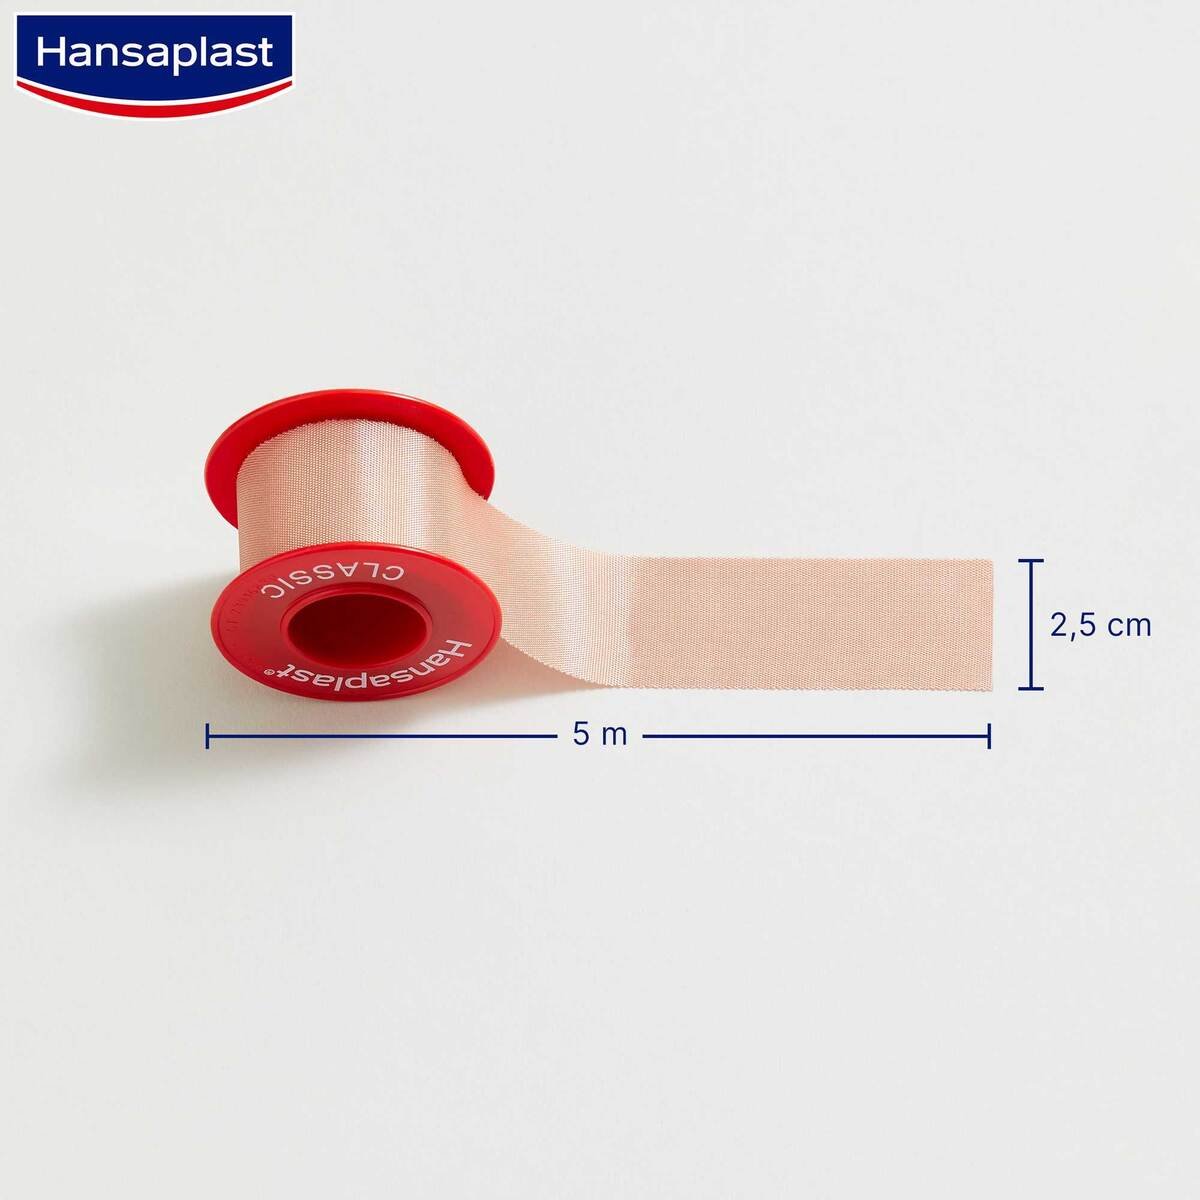 Hansaplast Fixation Tape Classic (5m x 2.5cm) 1 pc